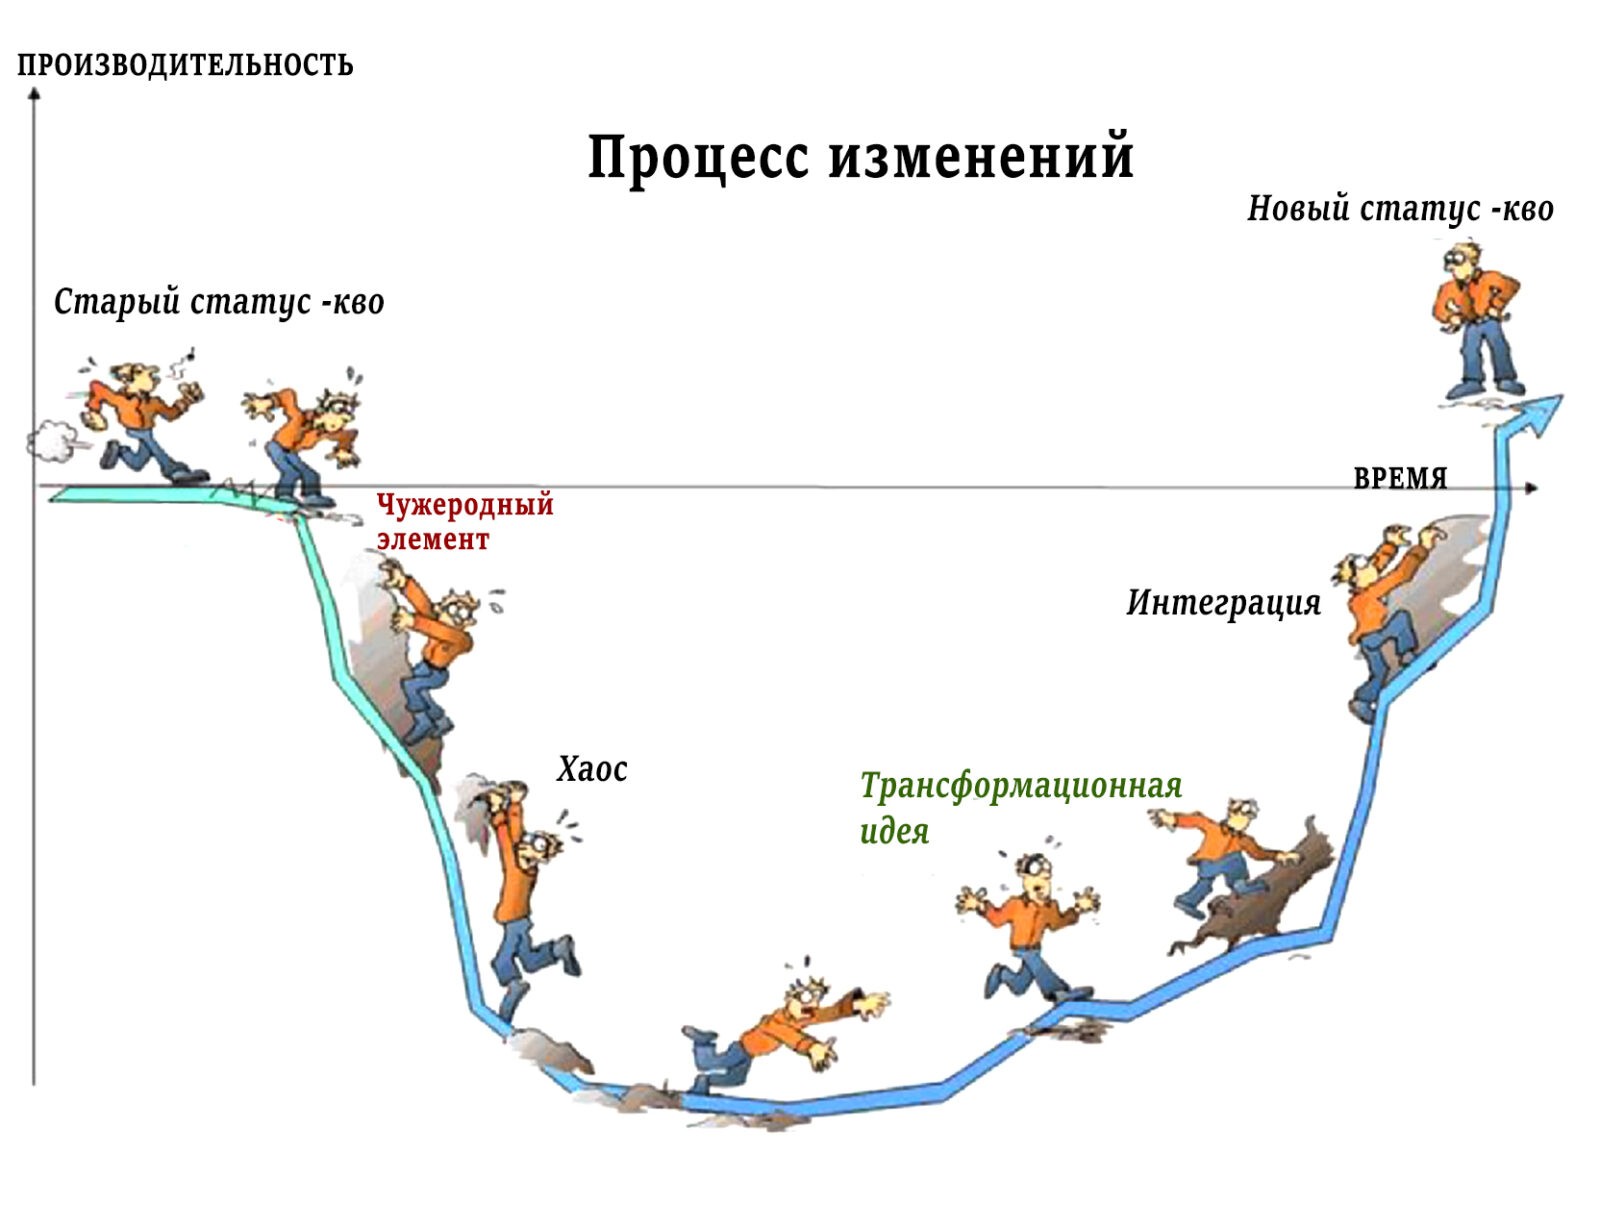 Роль событий в процессе организационных изменений (модель В.Сатир)